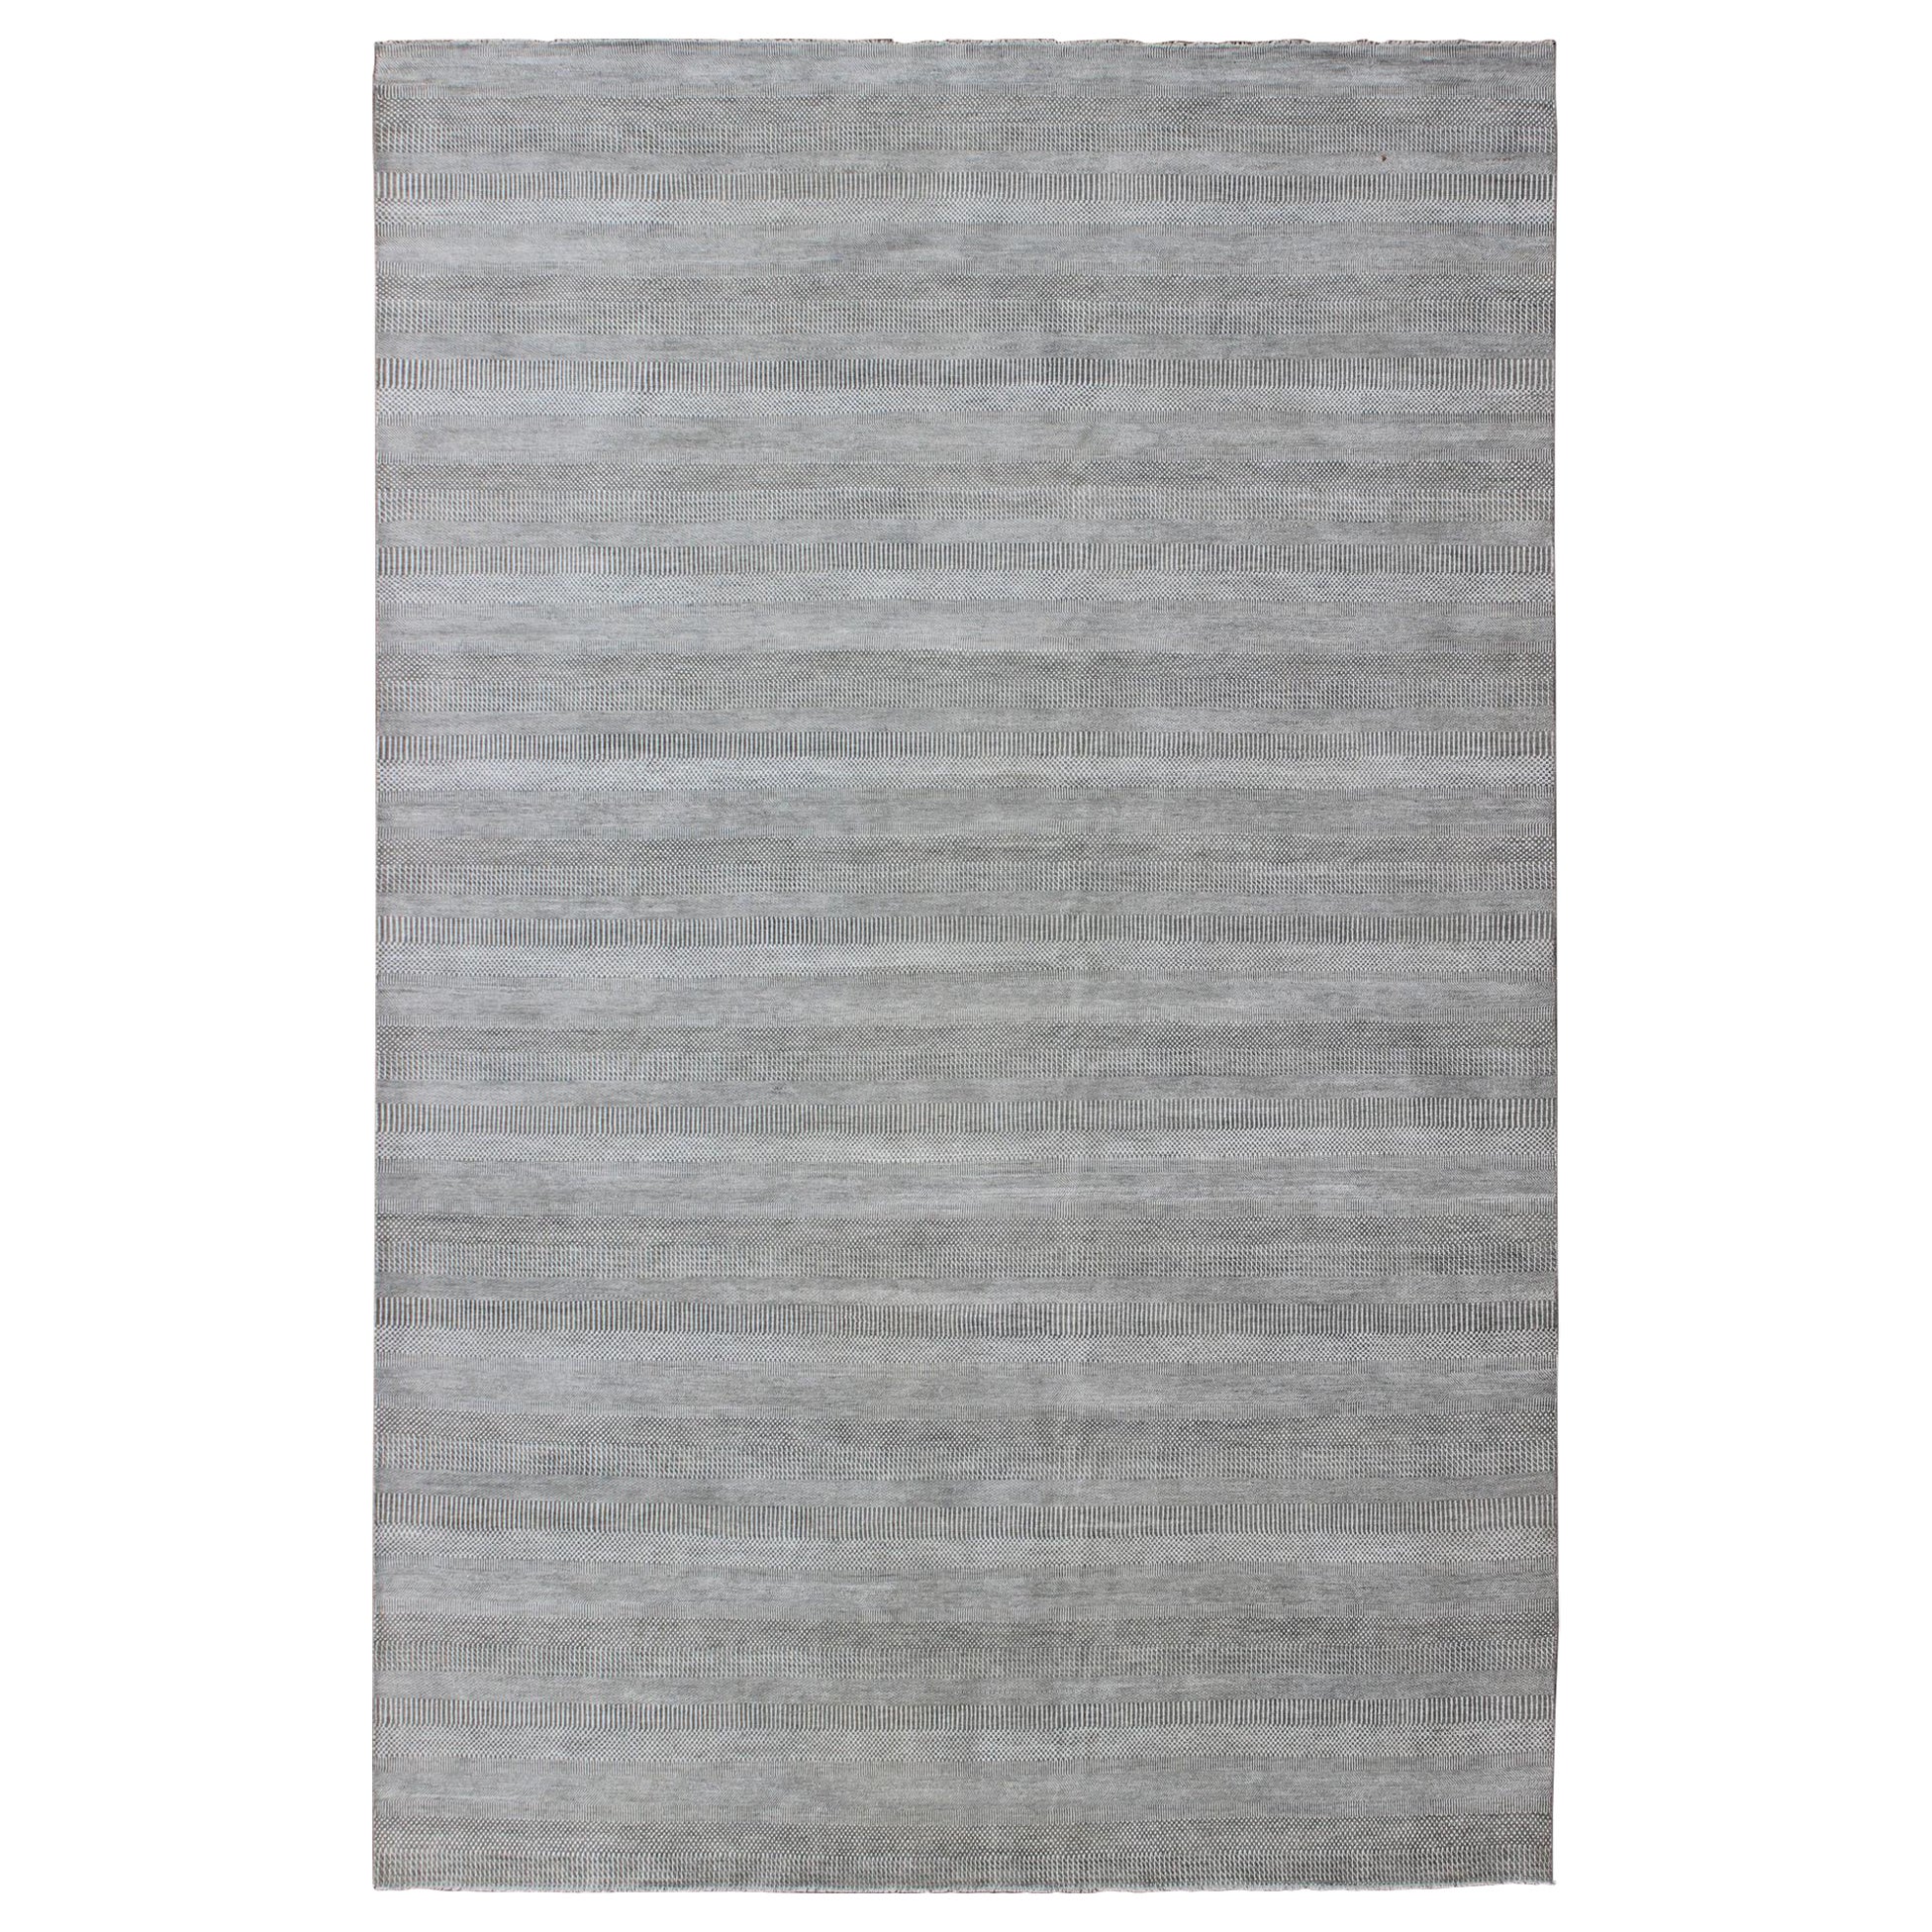 Großer moderner Teppich mit Übergangsmuster in Grau und Elfenbein